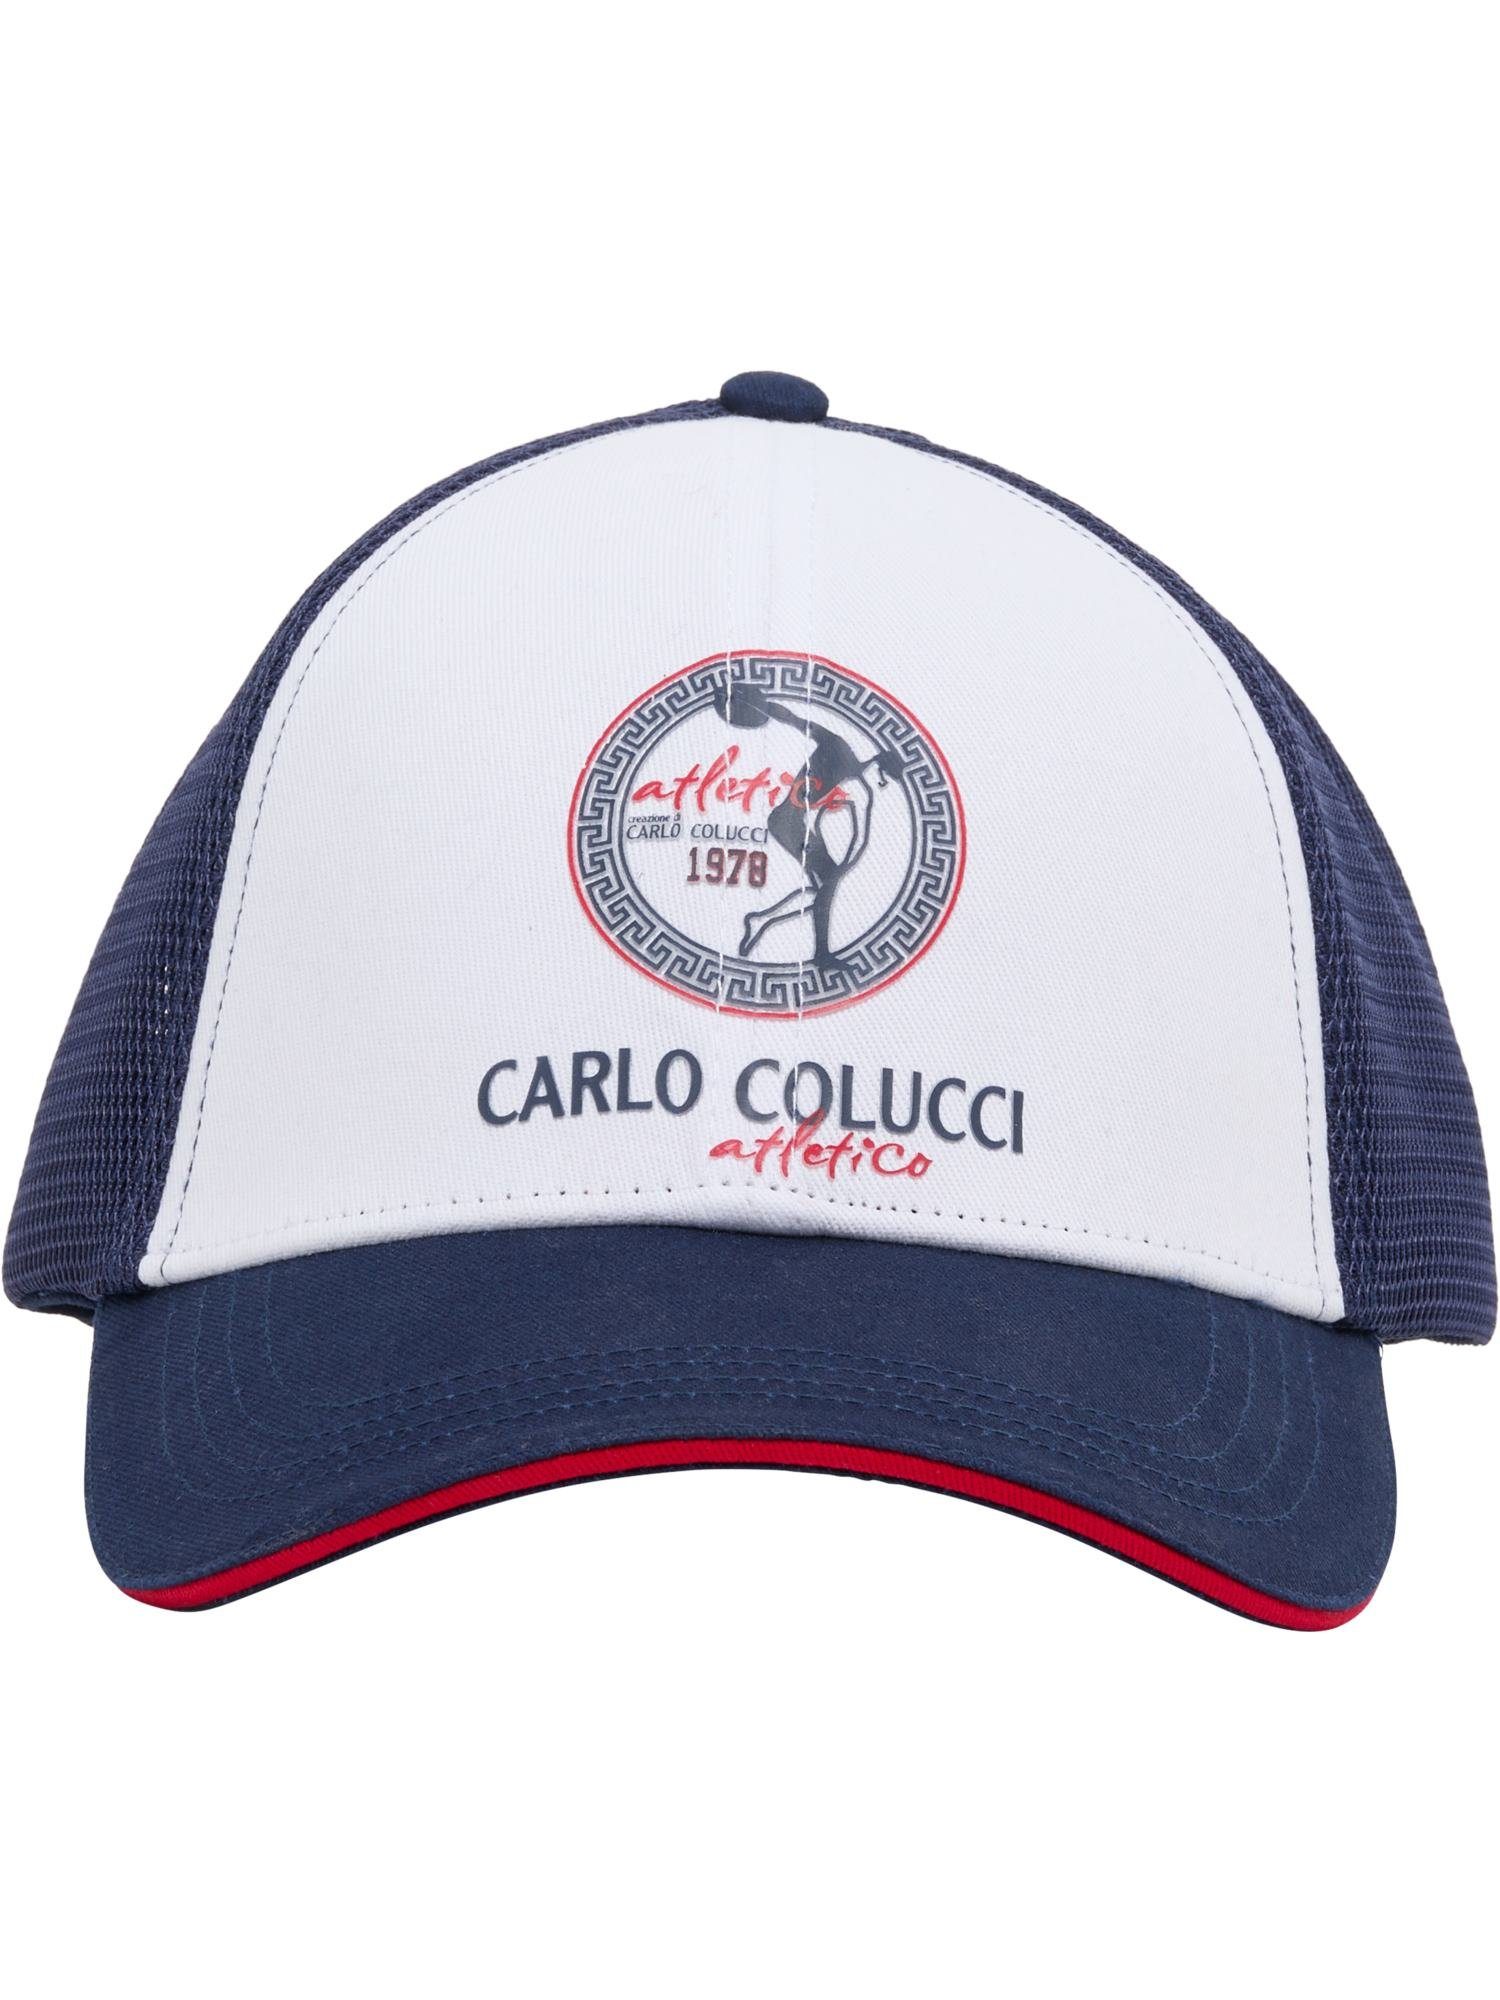 CARLO COLUCCI Baseball Cap DeMarchi